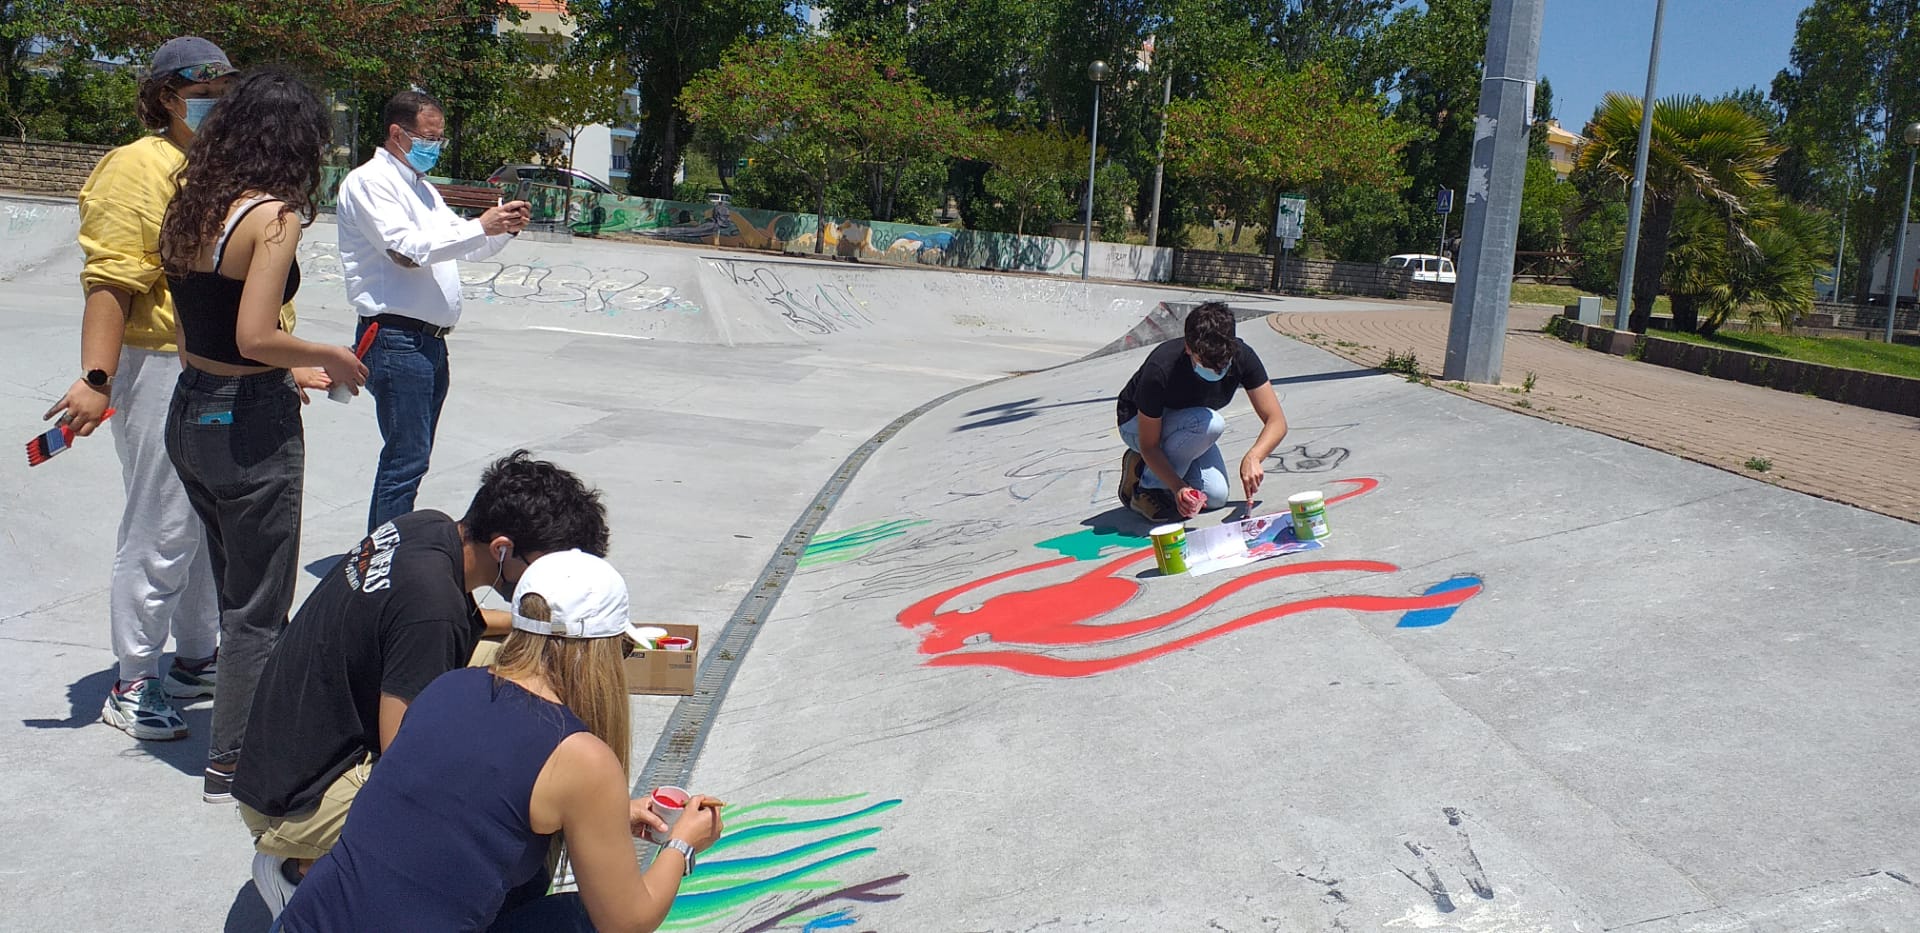 Execução da pintura no skatepark da Lourinhã